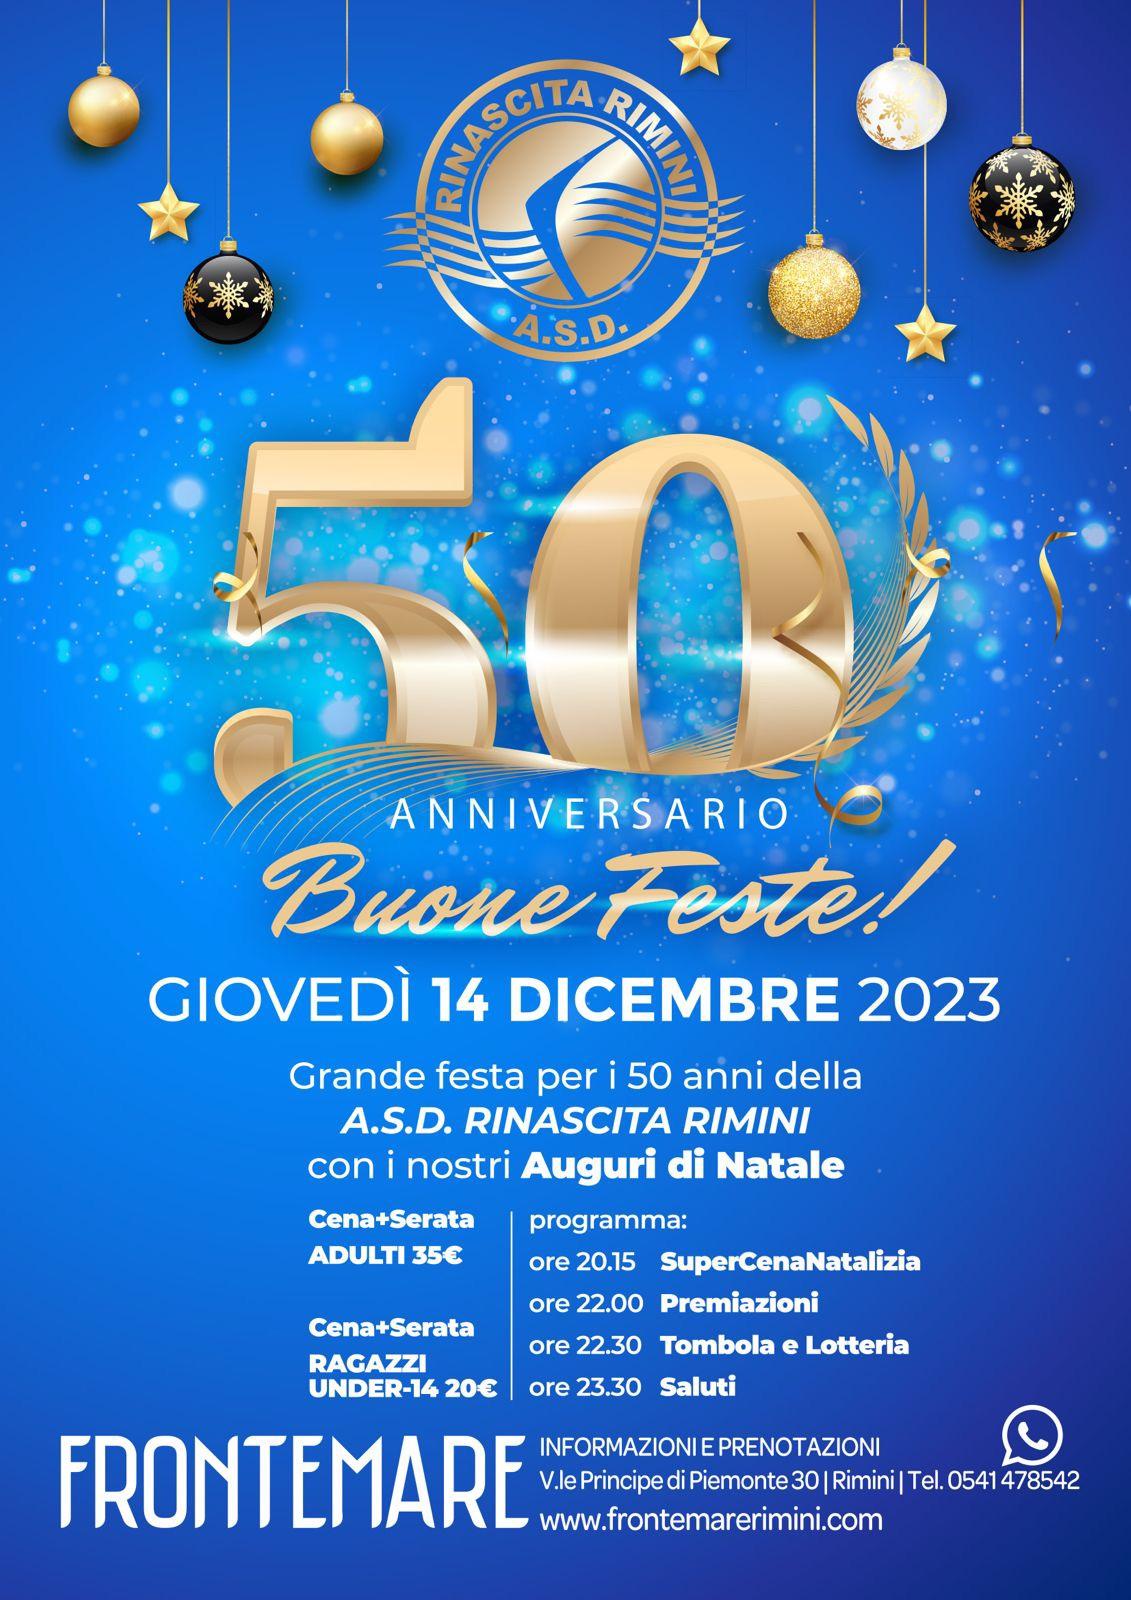 Giovedì 14 dicembre cena e festa per i 50 anni della Rinascita Nuoto Rimini